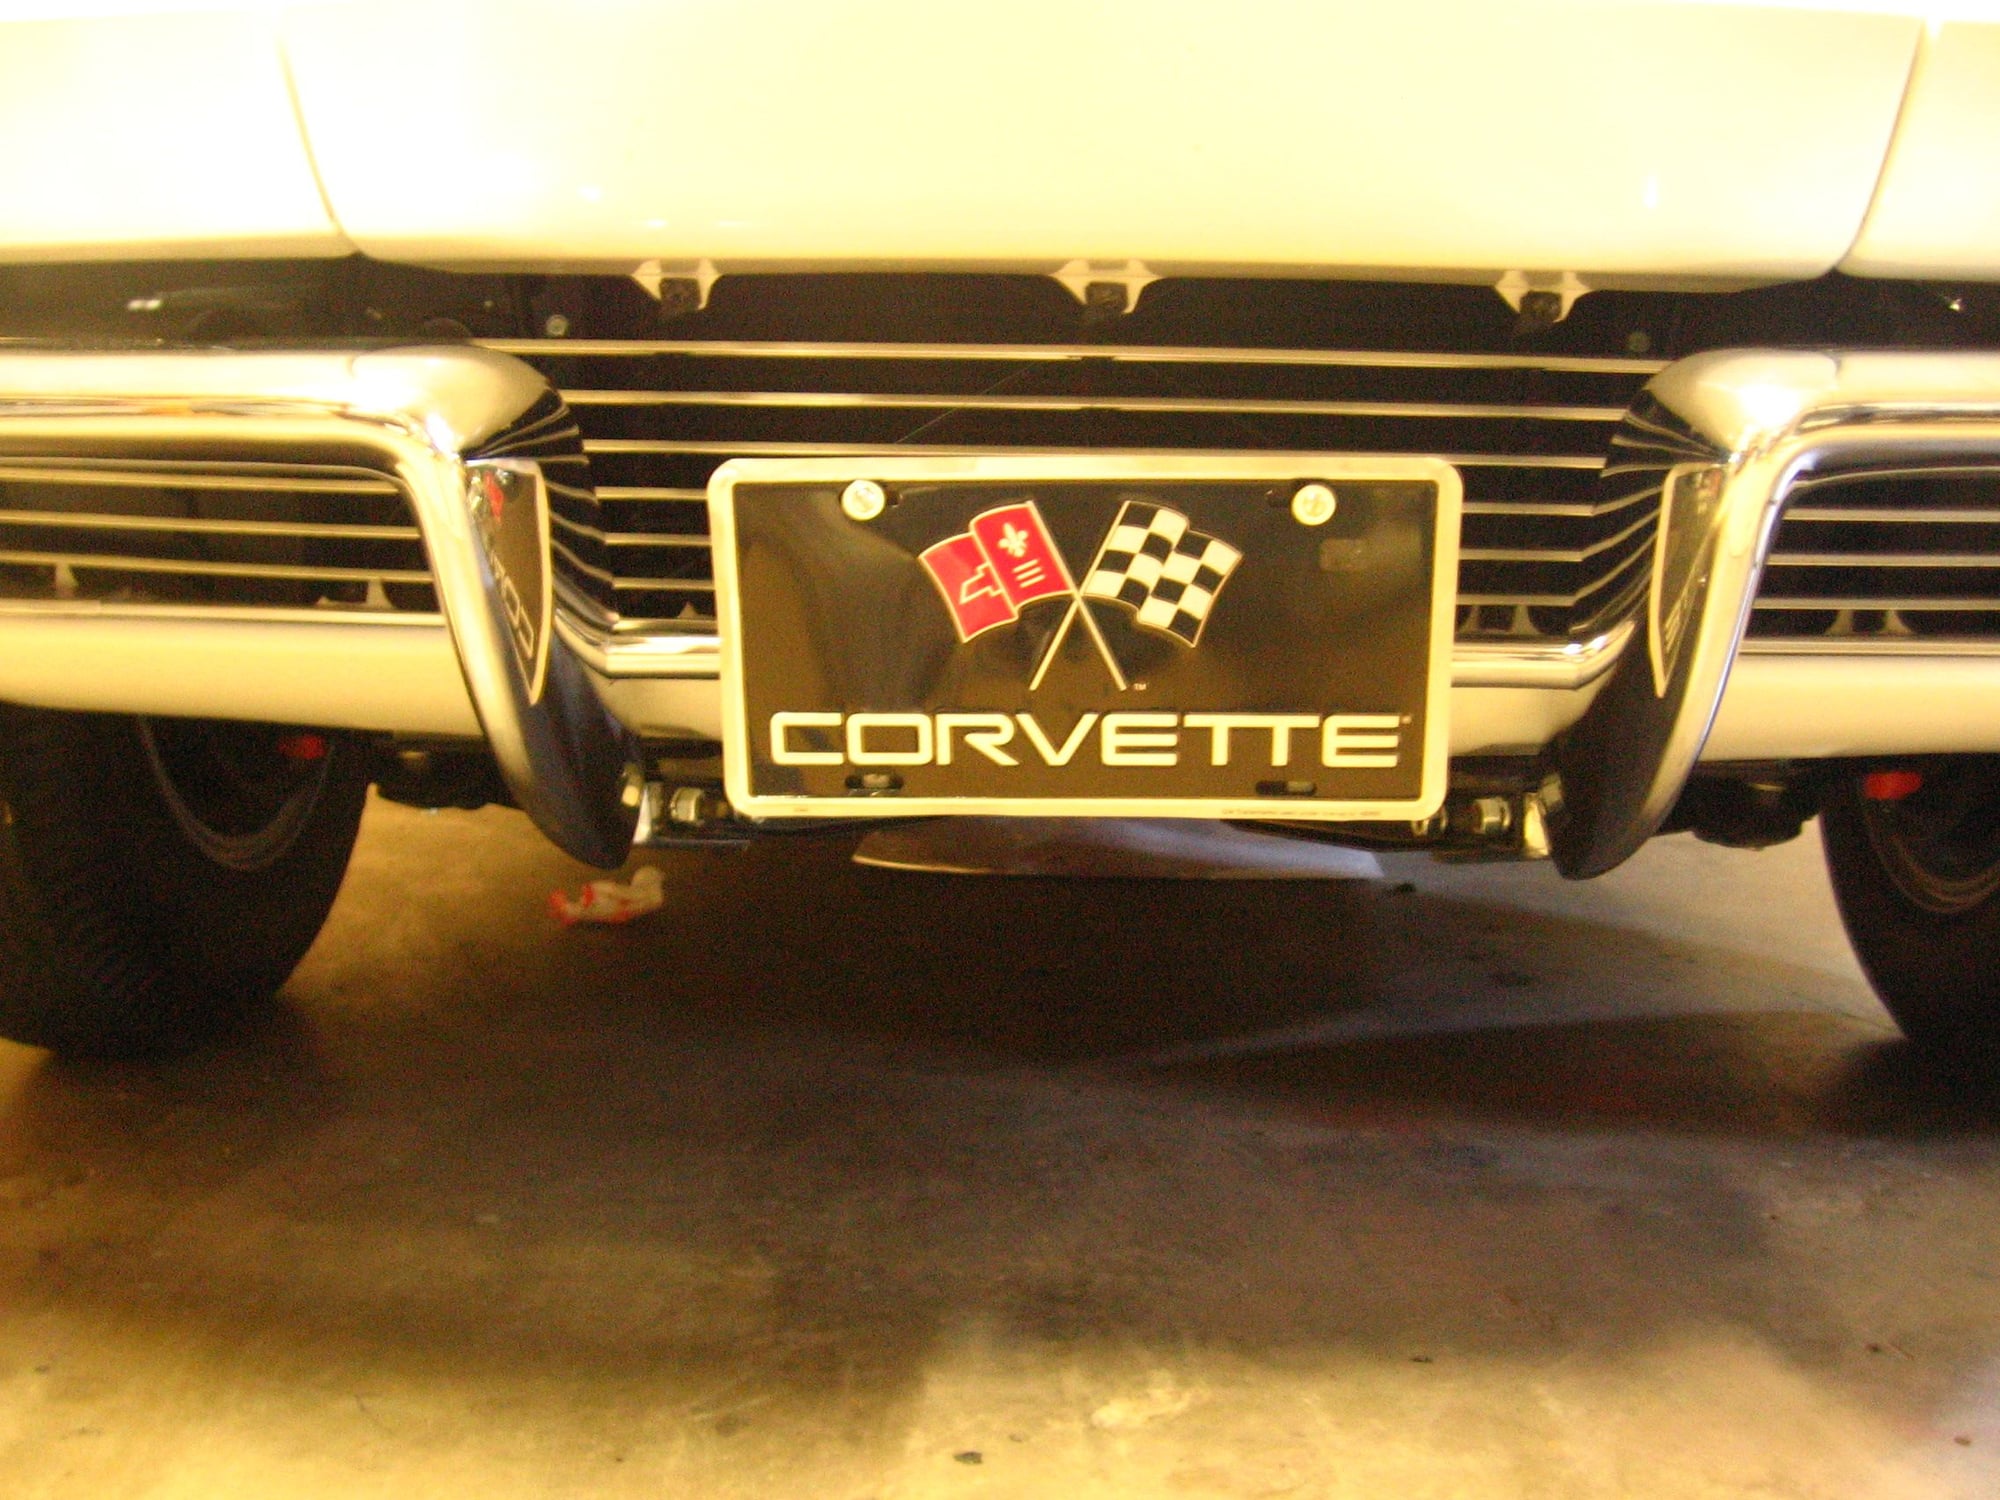 95 corvette front license plate bracket